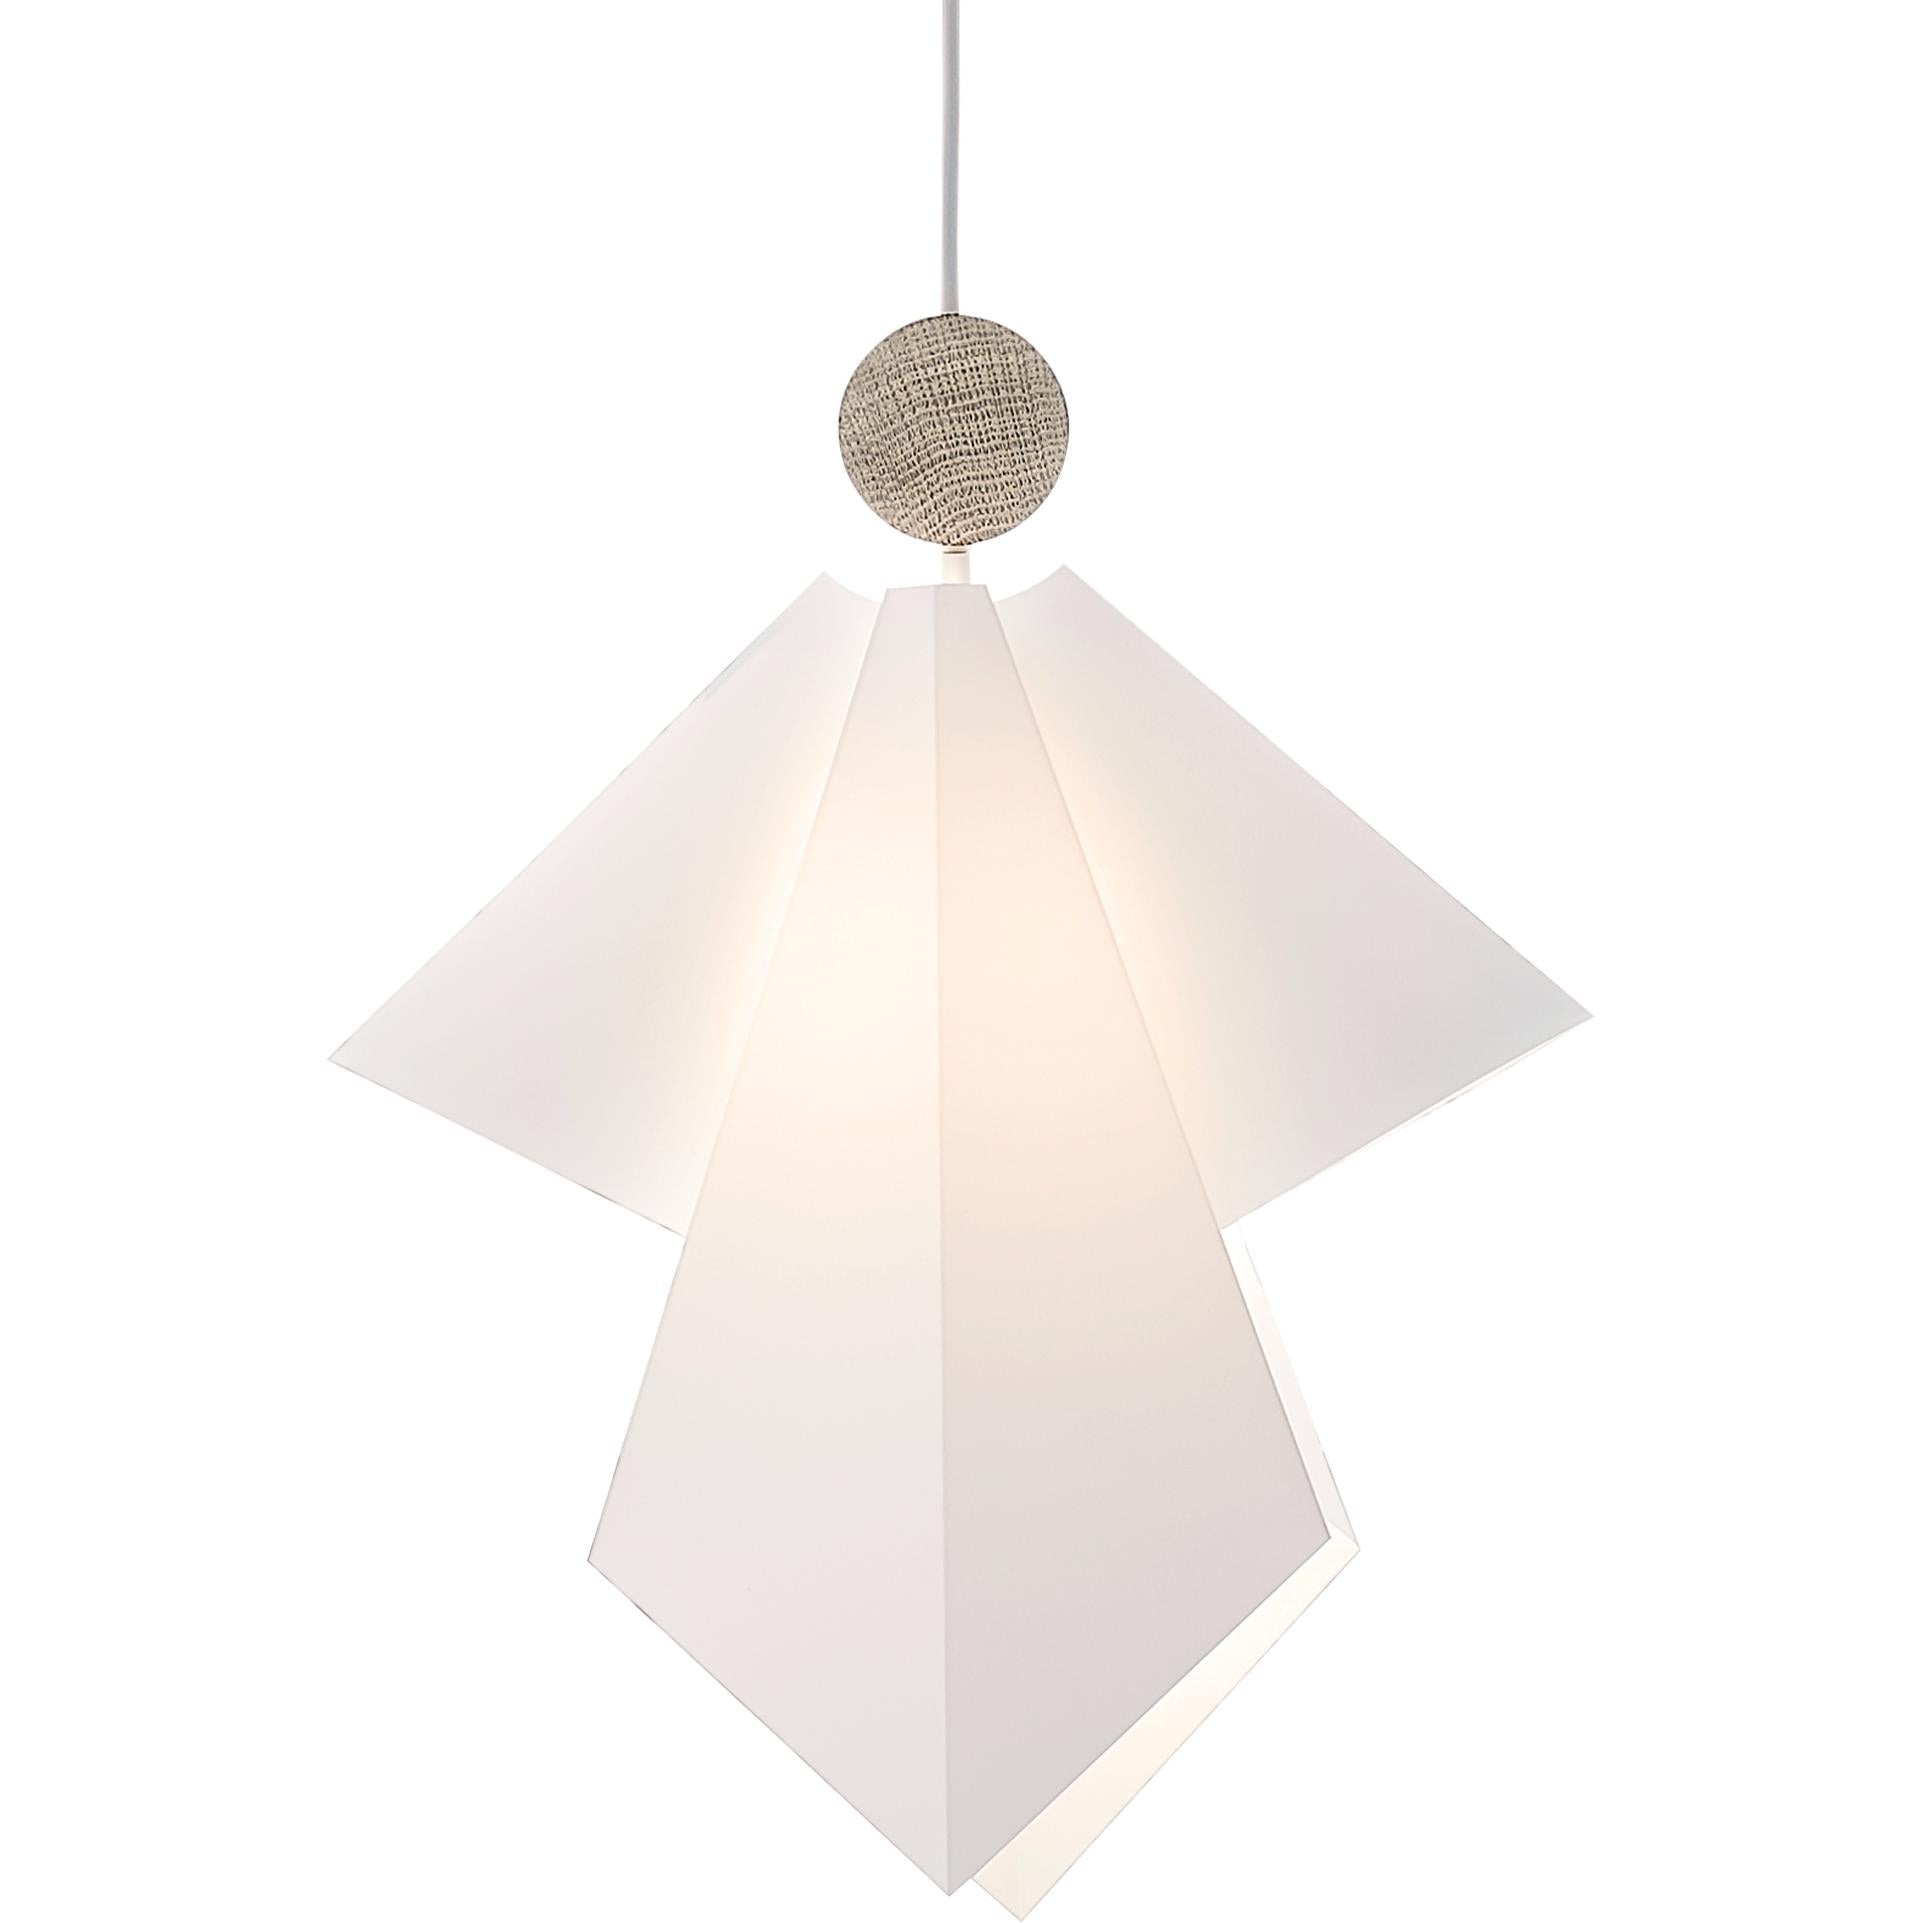 Le Klint Gabriel Engel Pinging Lamp, XL